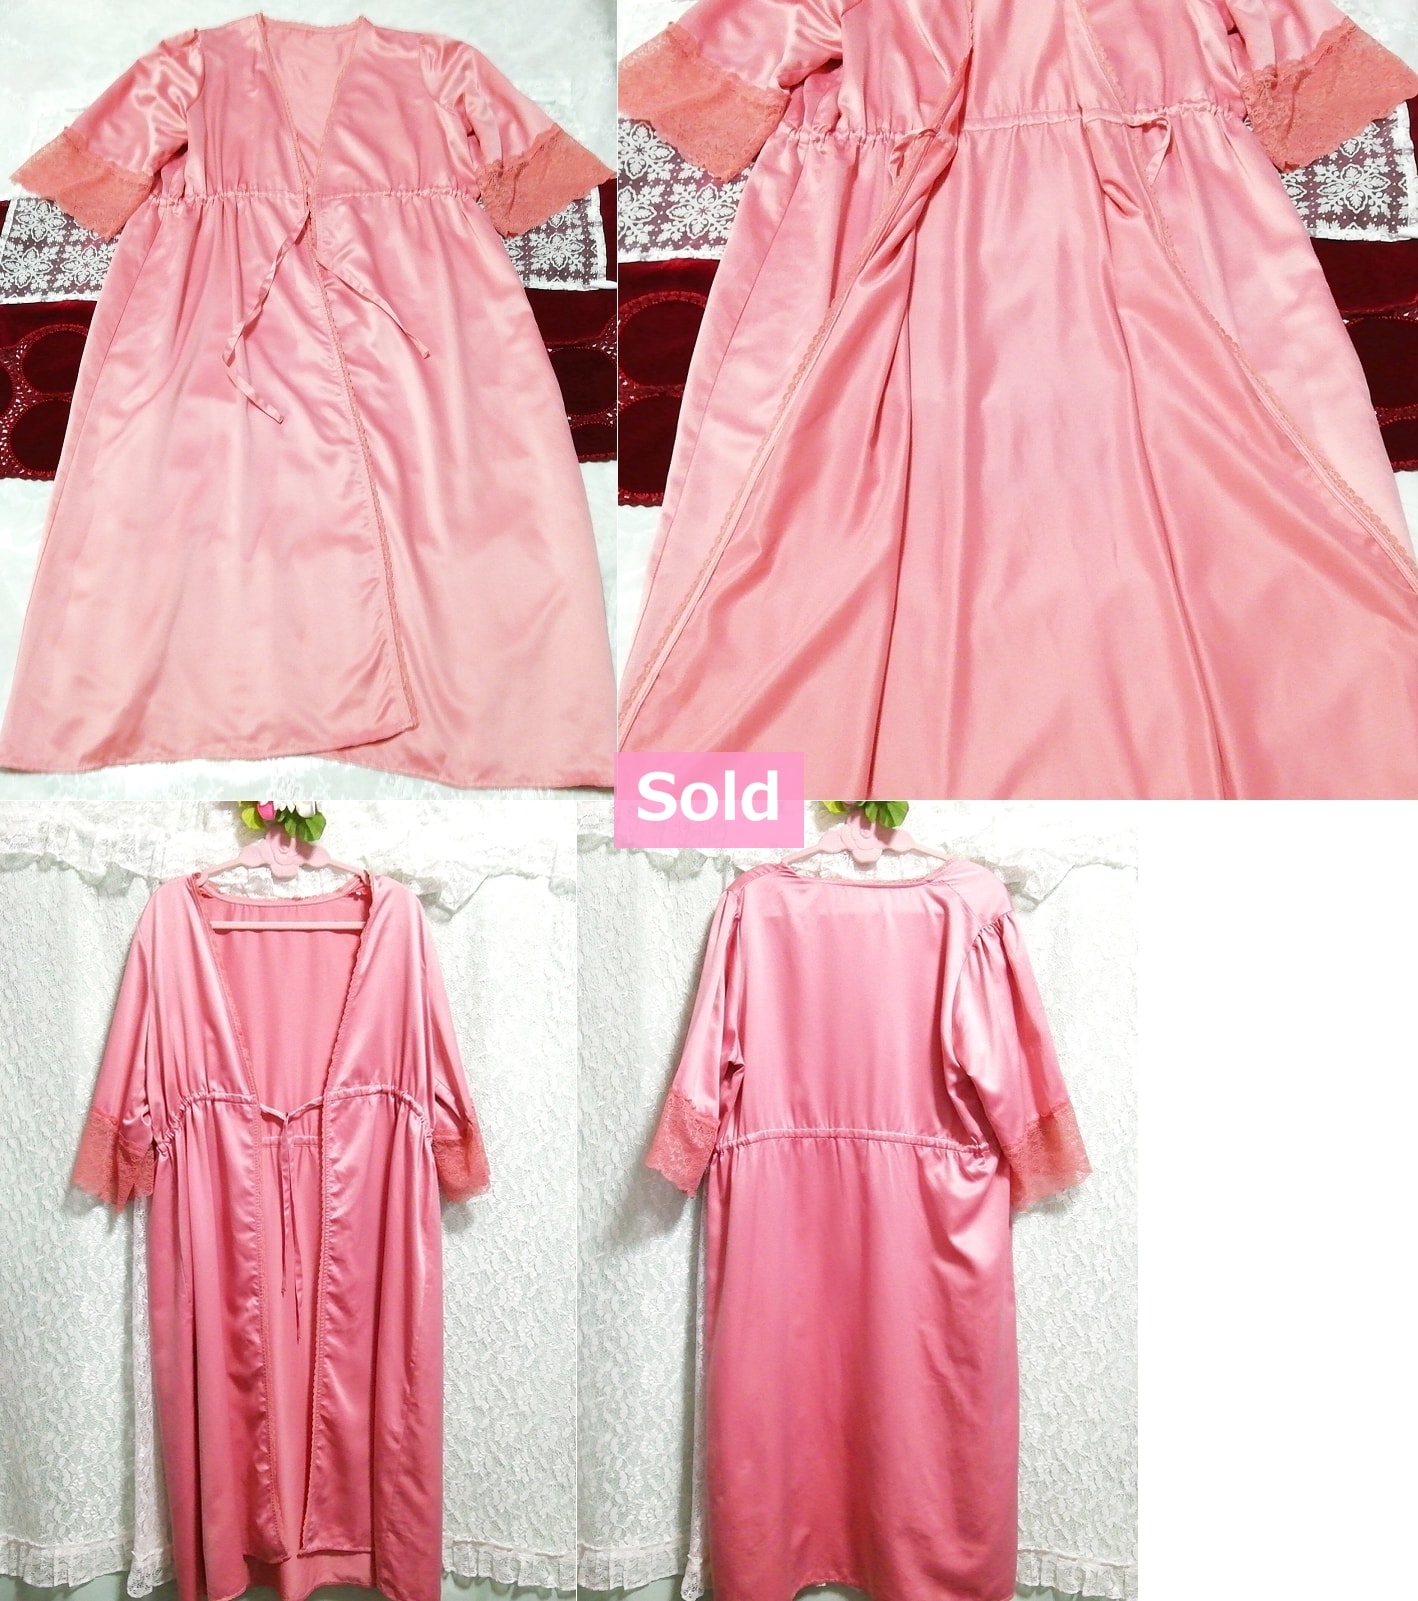 ثوب نوم طويل من الساتان الوردي، ثوب نوم هاوري، فستان من قطعة واحدة, موضة, أزياء السيدات, ملابس نوم, لباس نوم